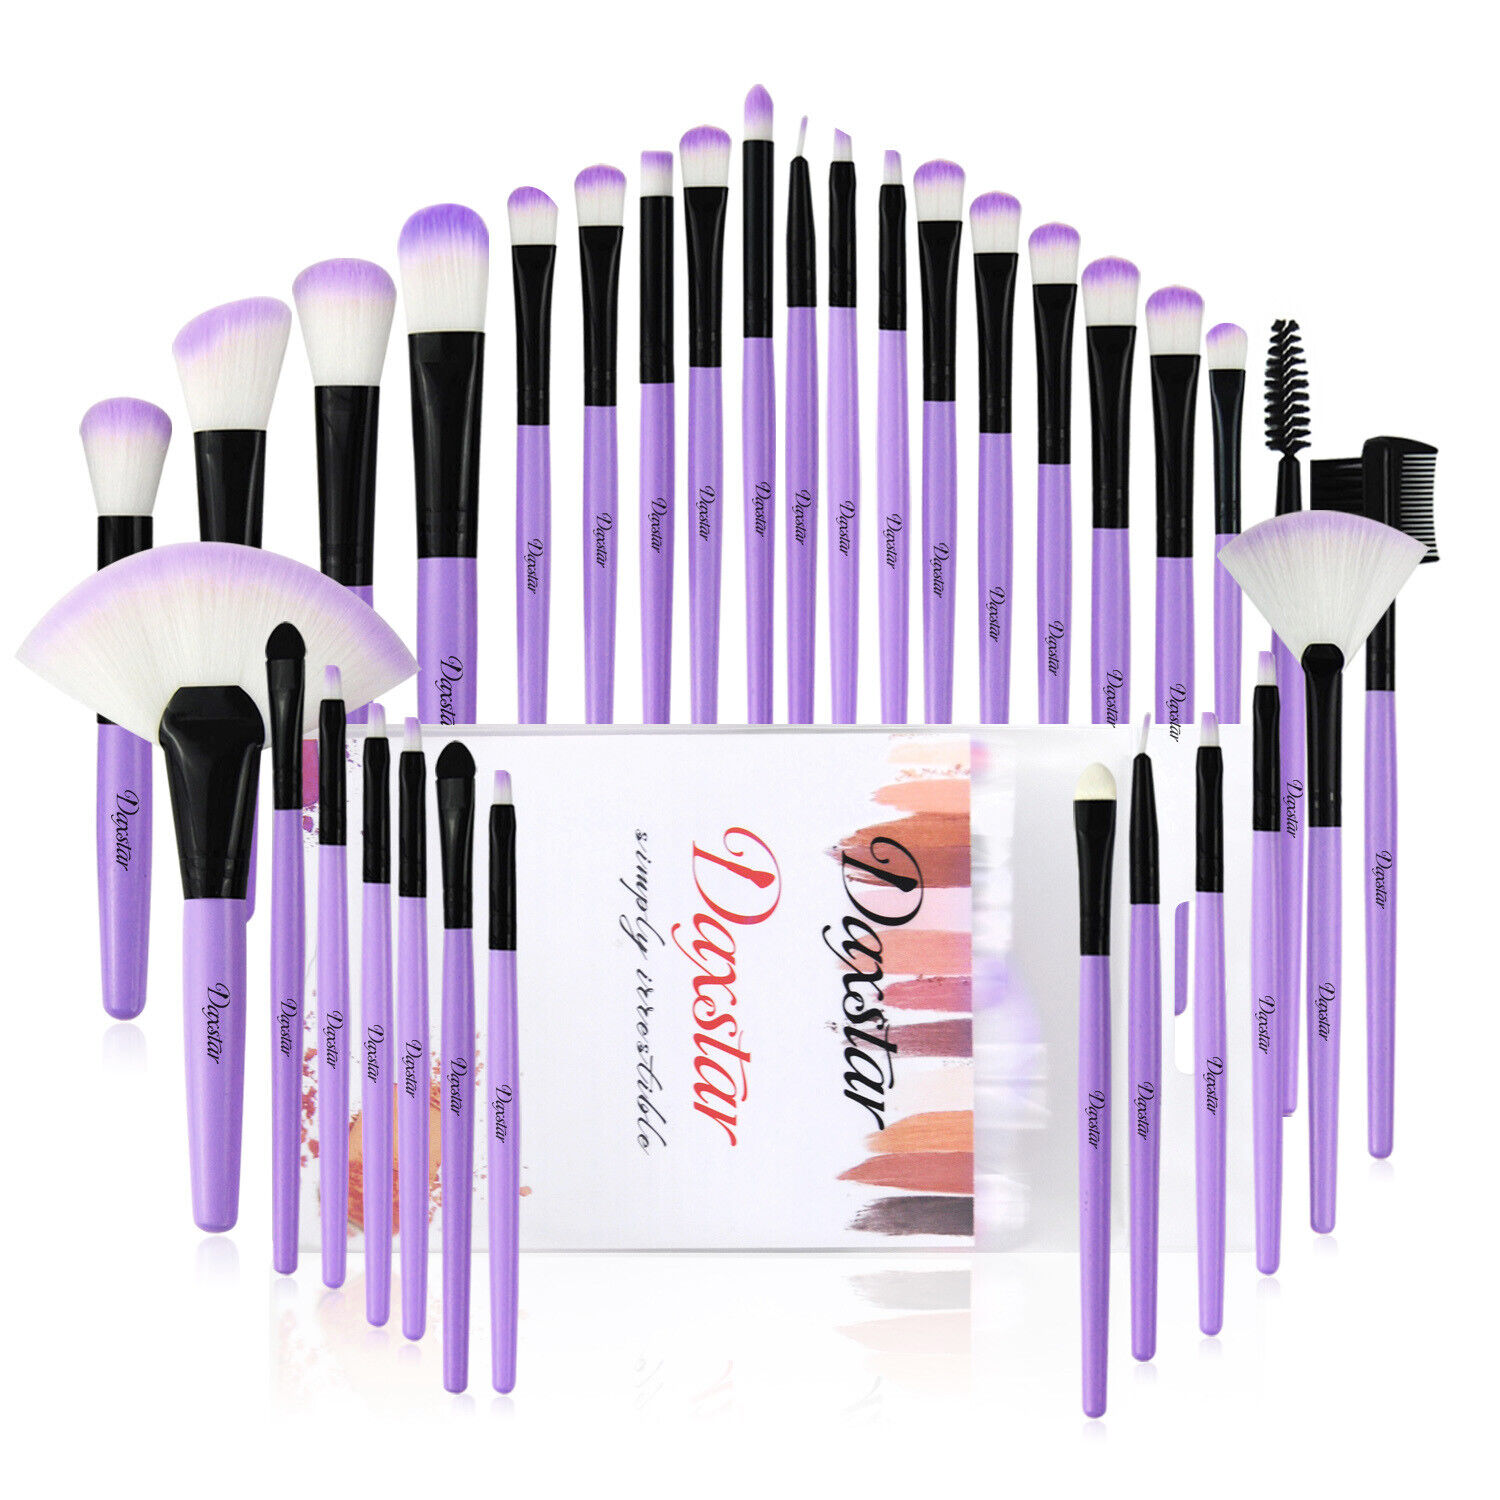 32pcs Makeup Brush Set Professional Eyeshadow Foundation Cosmetic Brushes Tools